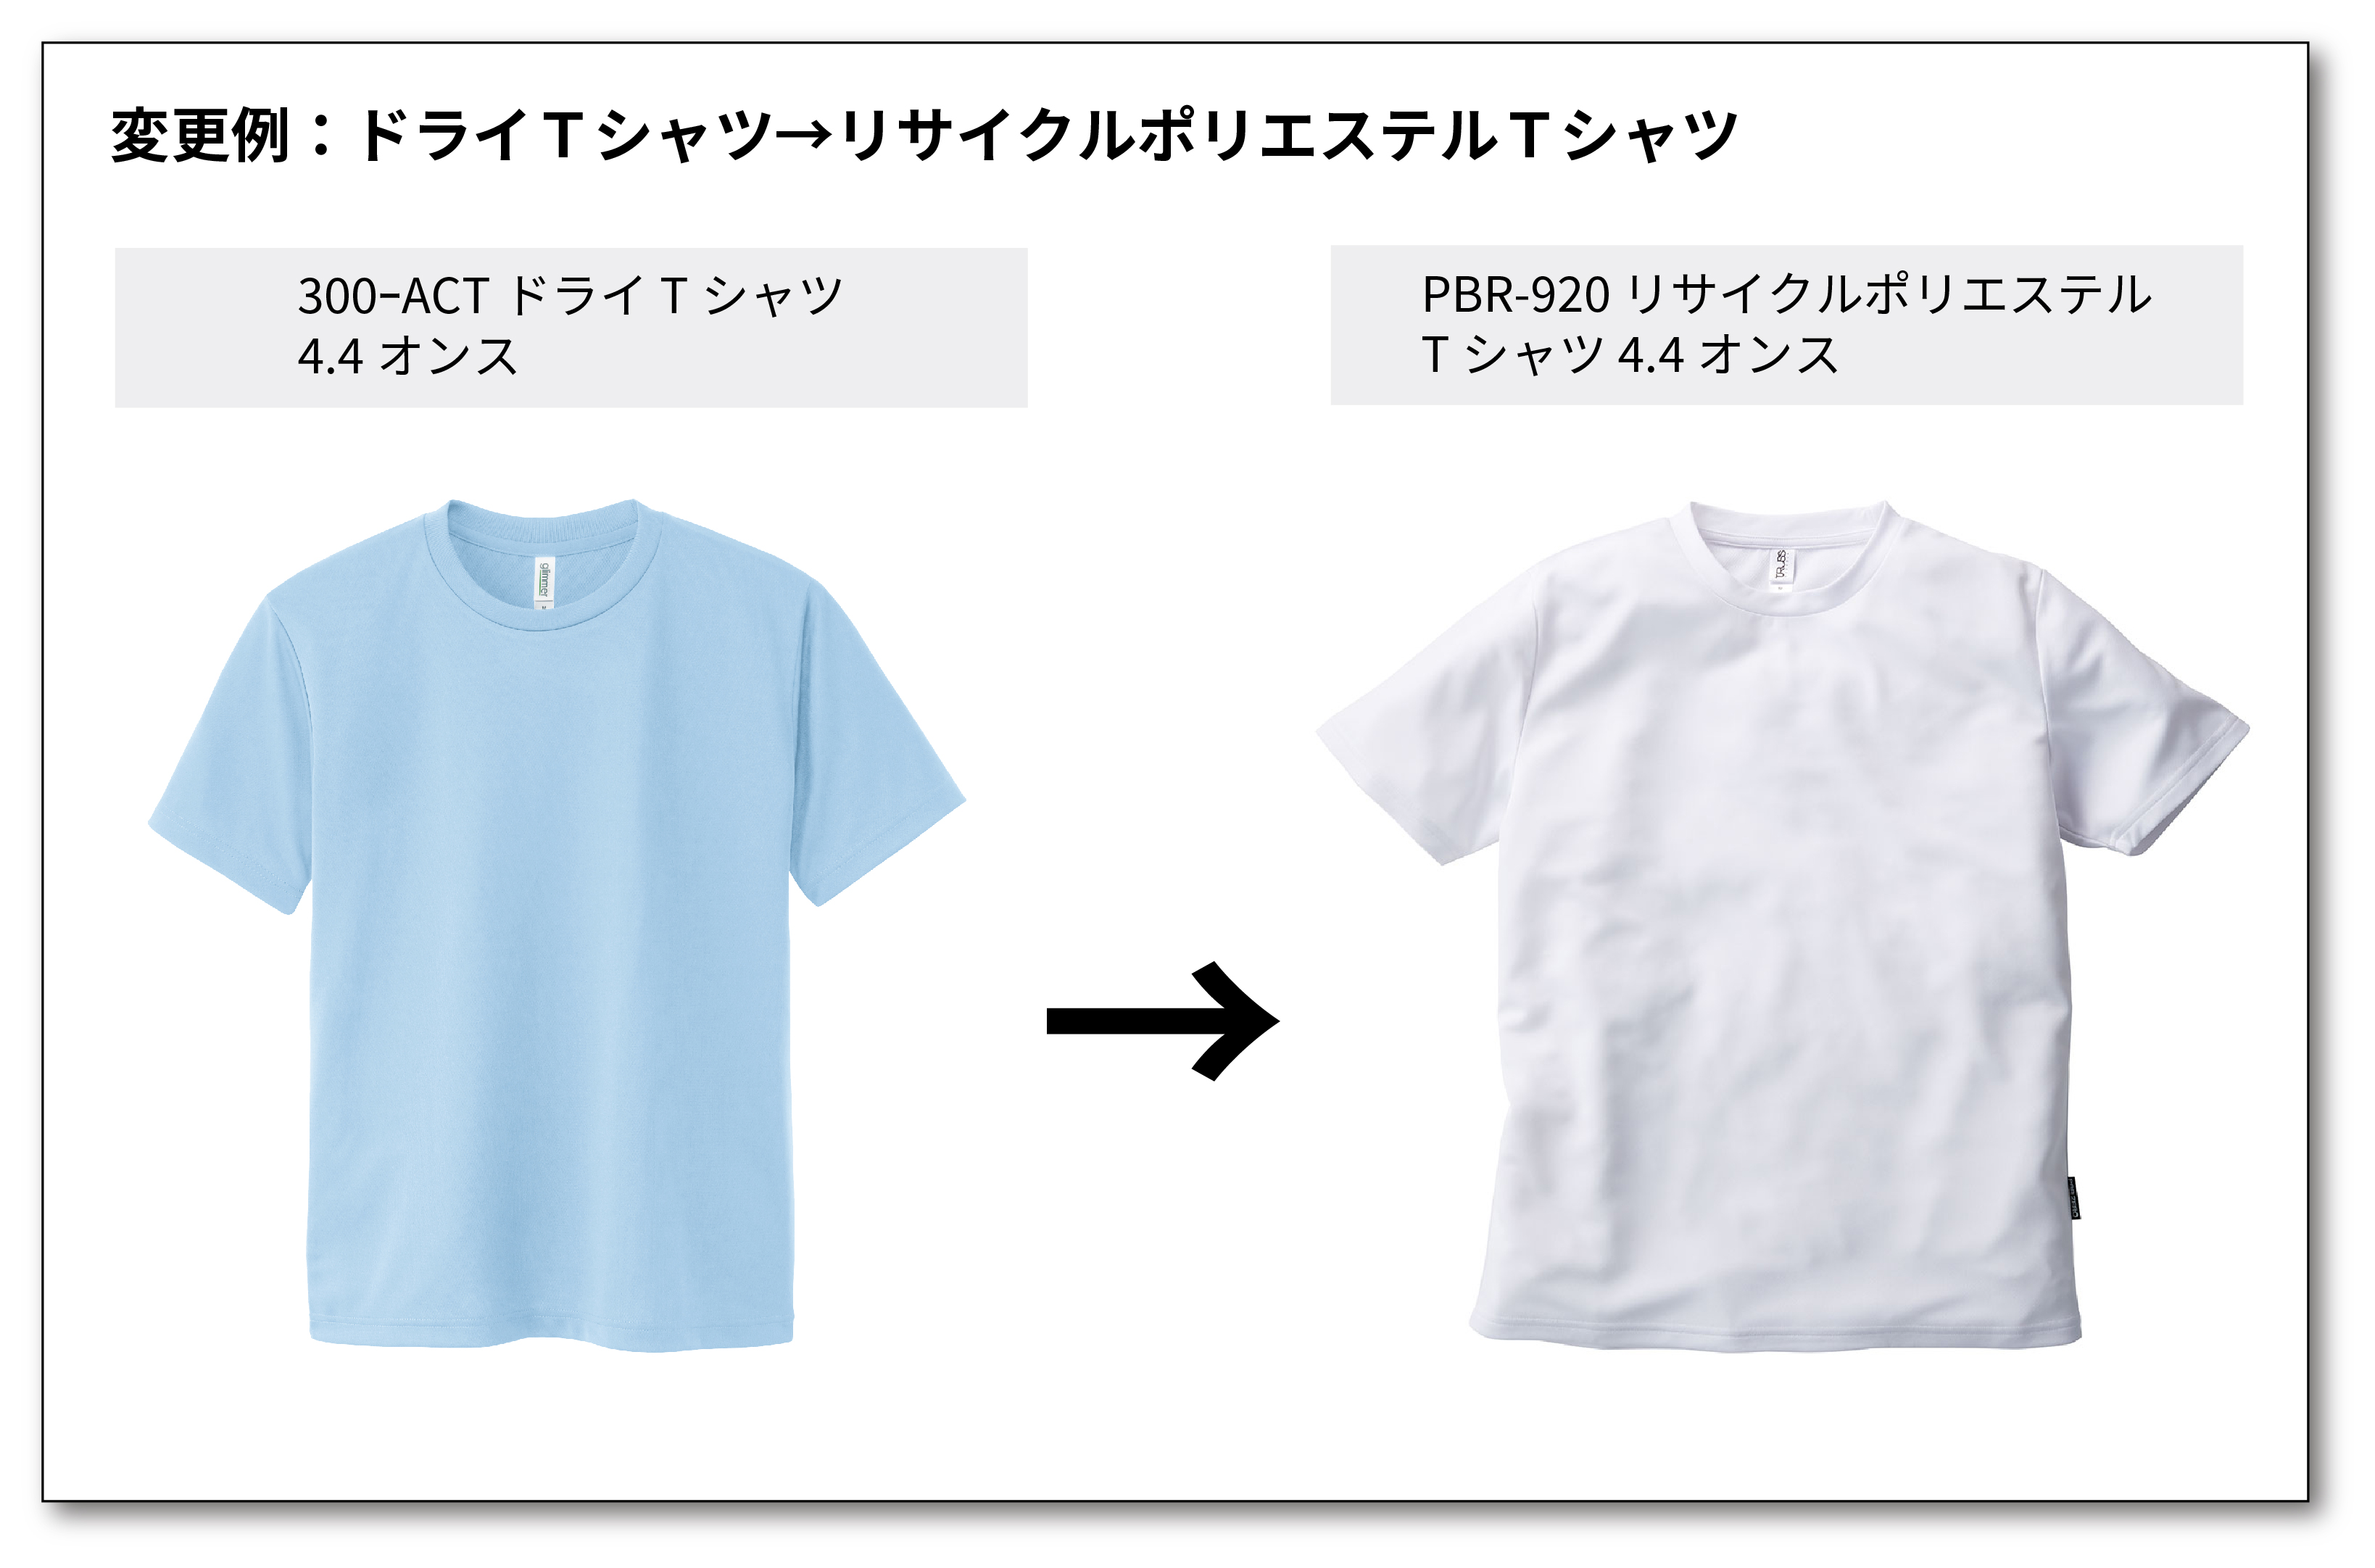 Tシャツ商品乗り換えキャンペーン参考例３